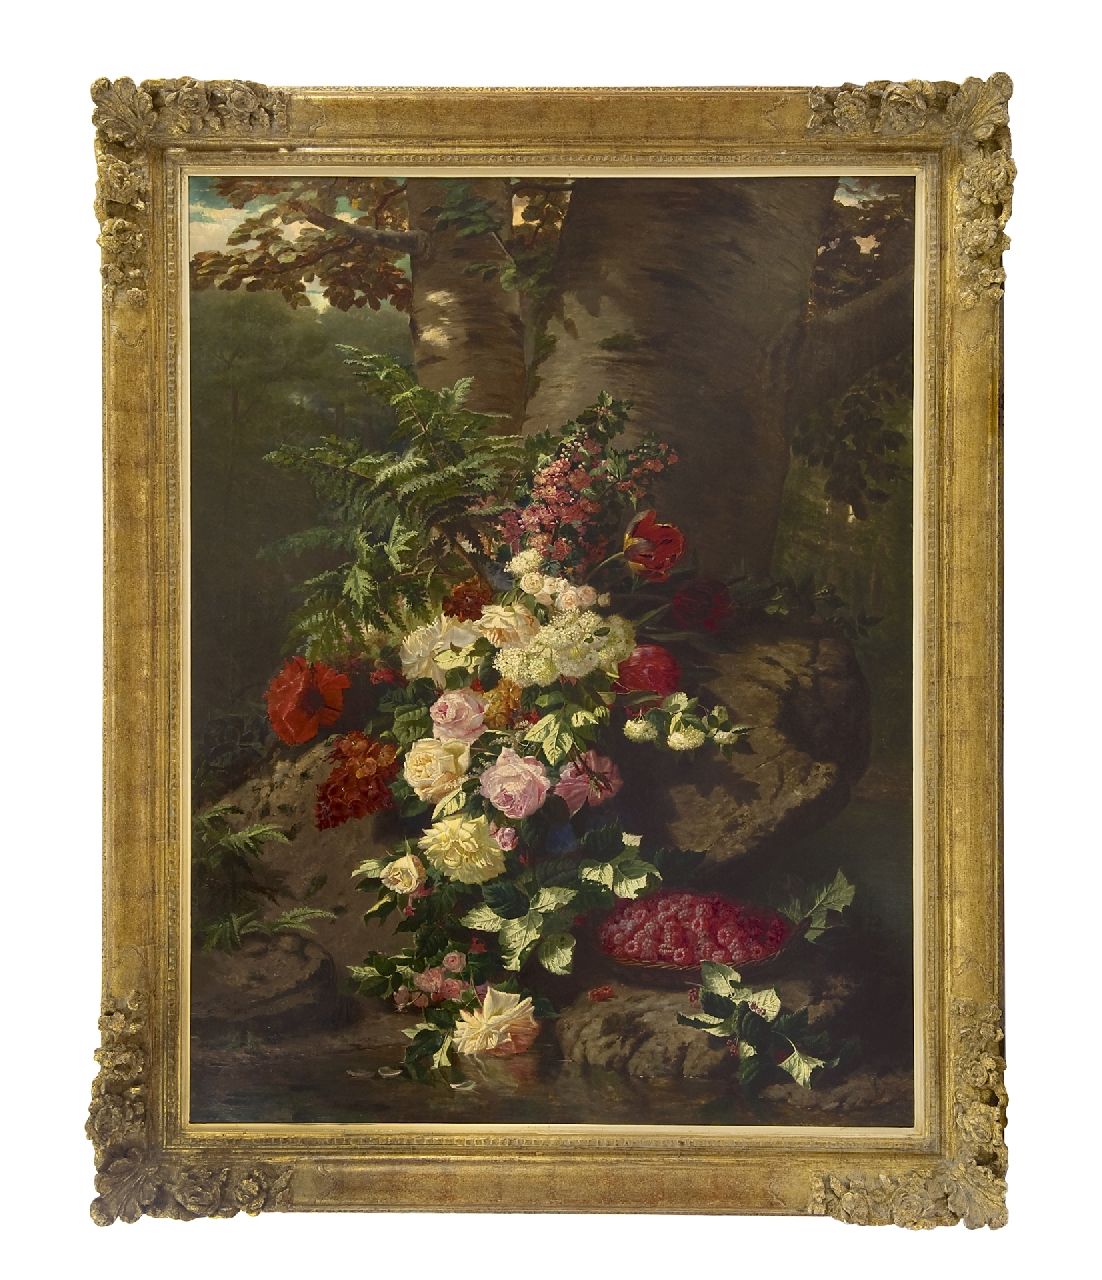 Robie J.B.  | Jean-Baptiste Robie | Schilderijen te koop aangeboden | Bloemstilleven met rozen, bloeiende takken en frambozen, olieverf op doek 137,7 x 106,0 cm, gesigneerd linksonder en gedateerd 'Bruxelles' 1864